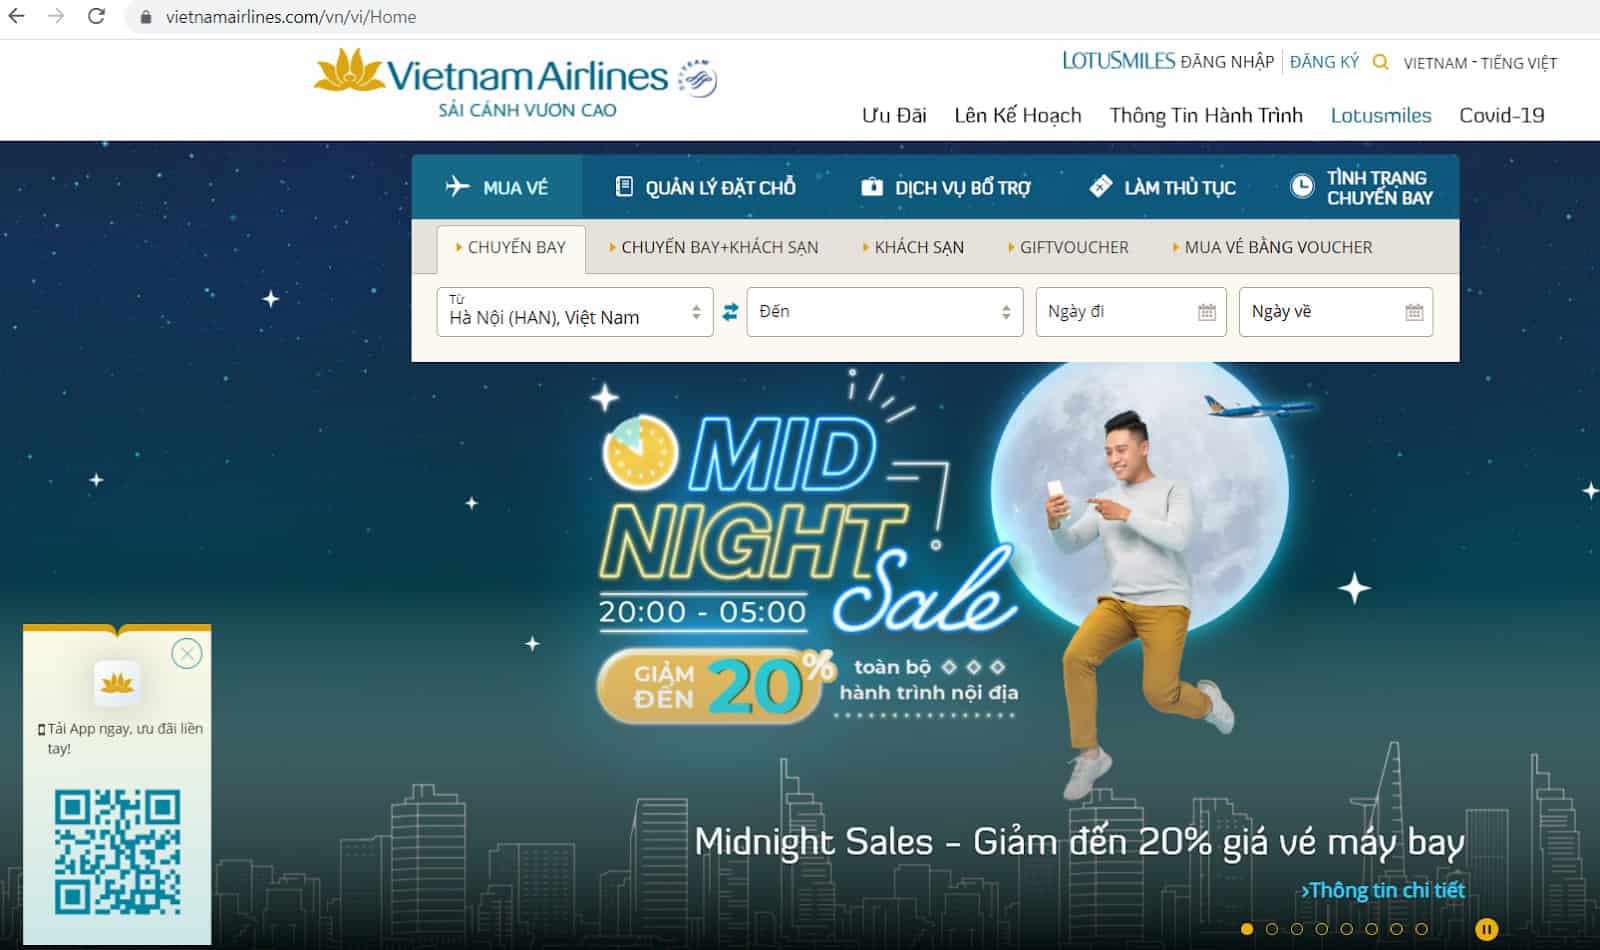 Hướng dẫn hoàn đổi vé Vietnam Airlines về tài khoản - Truy cập website 2